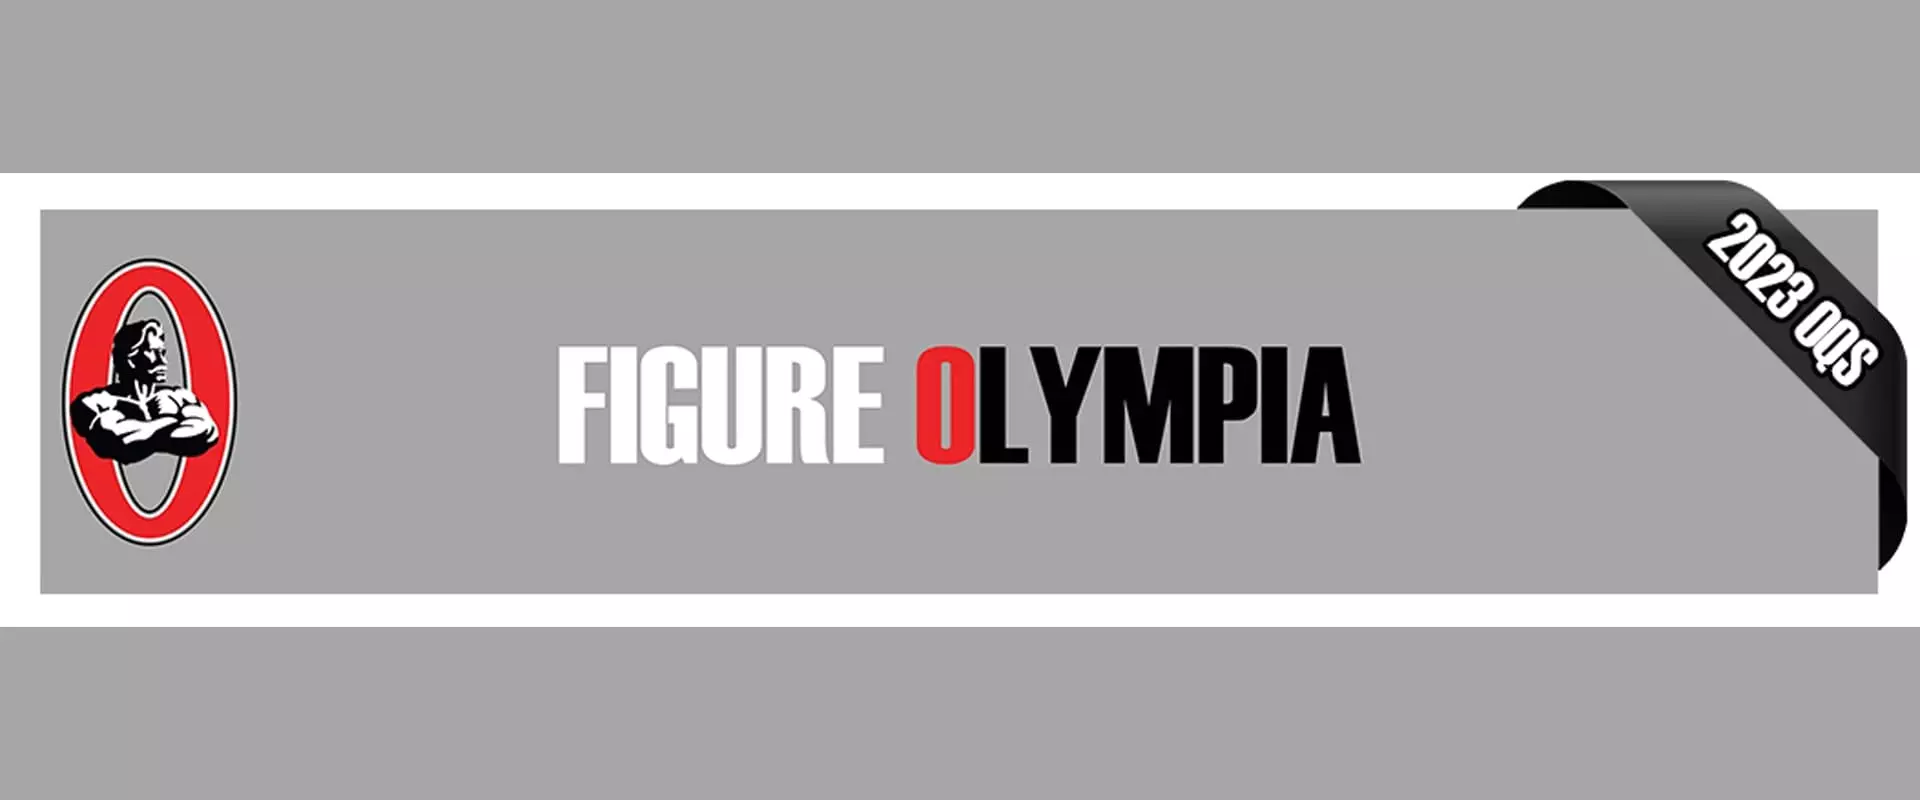 Olympia 2023 - Catégorie Figure